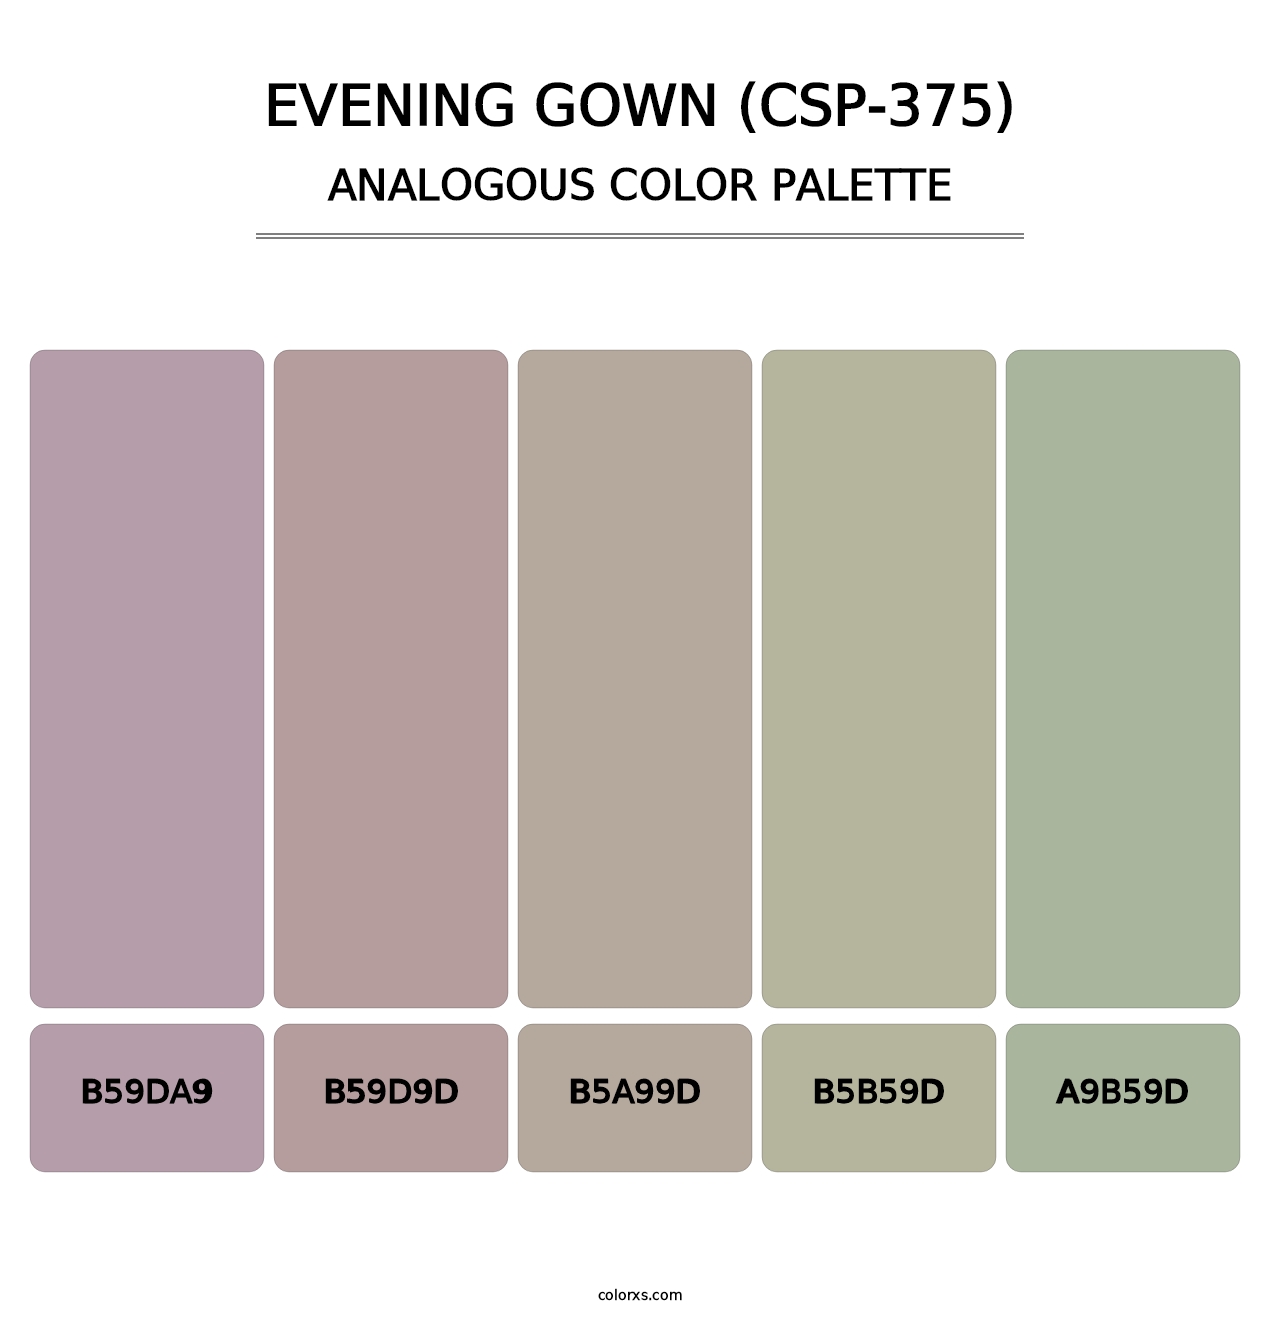 Evening Gown (CSP-375) - Analogous Color Palette